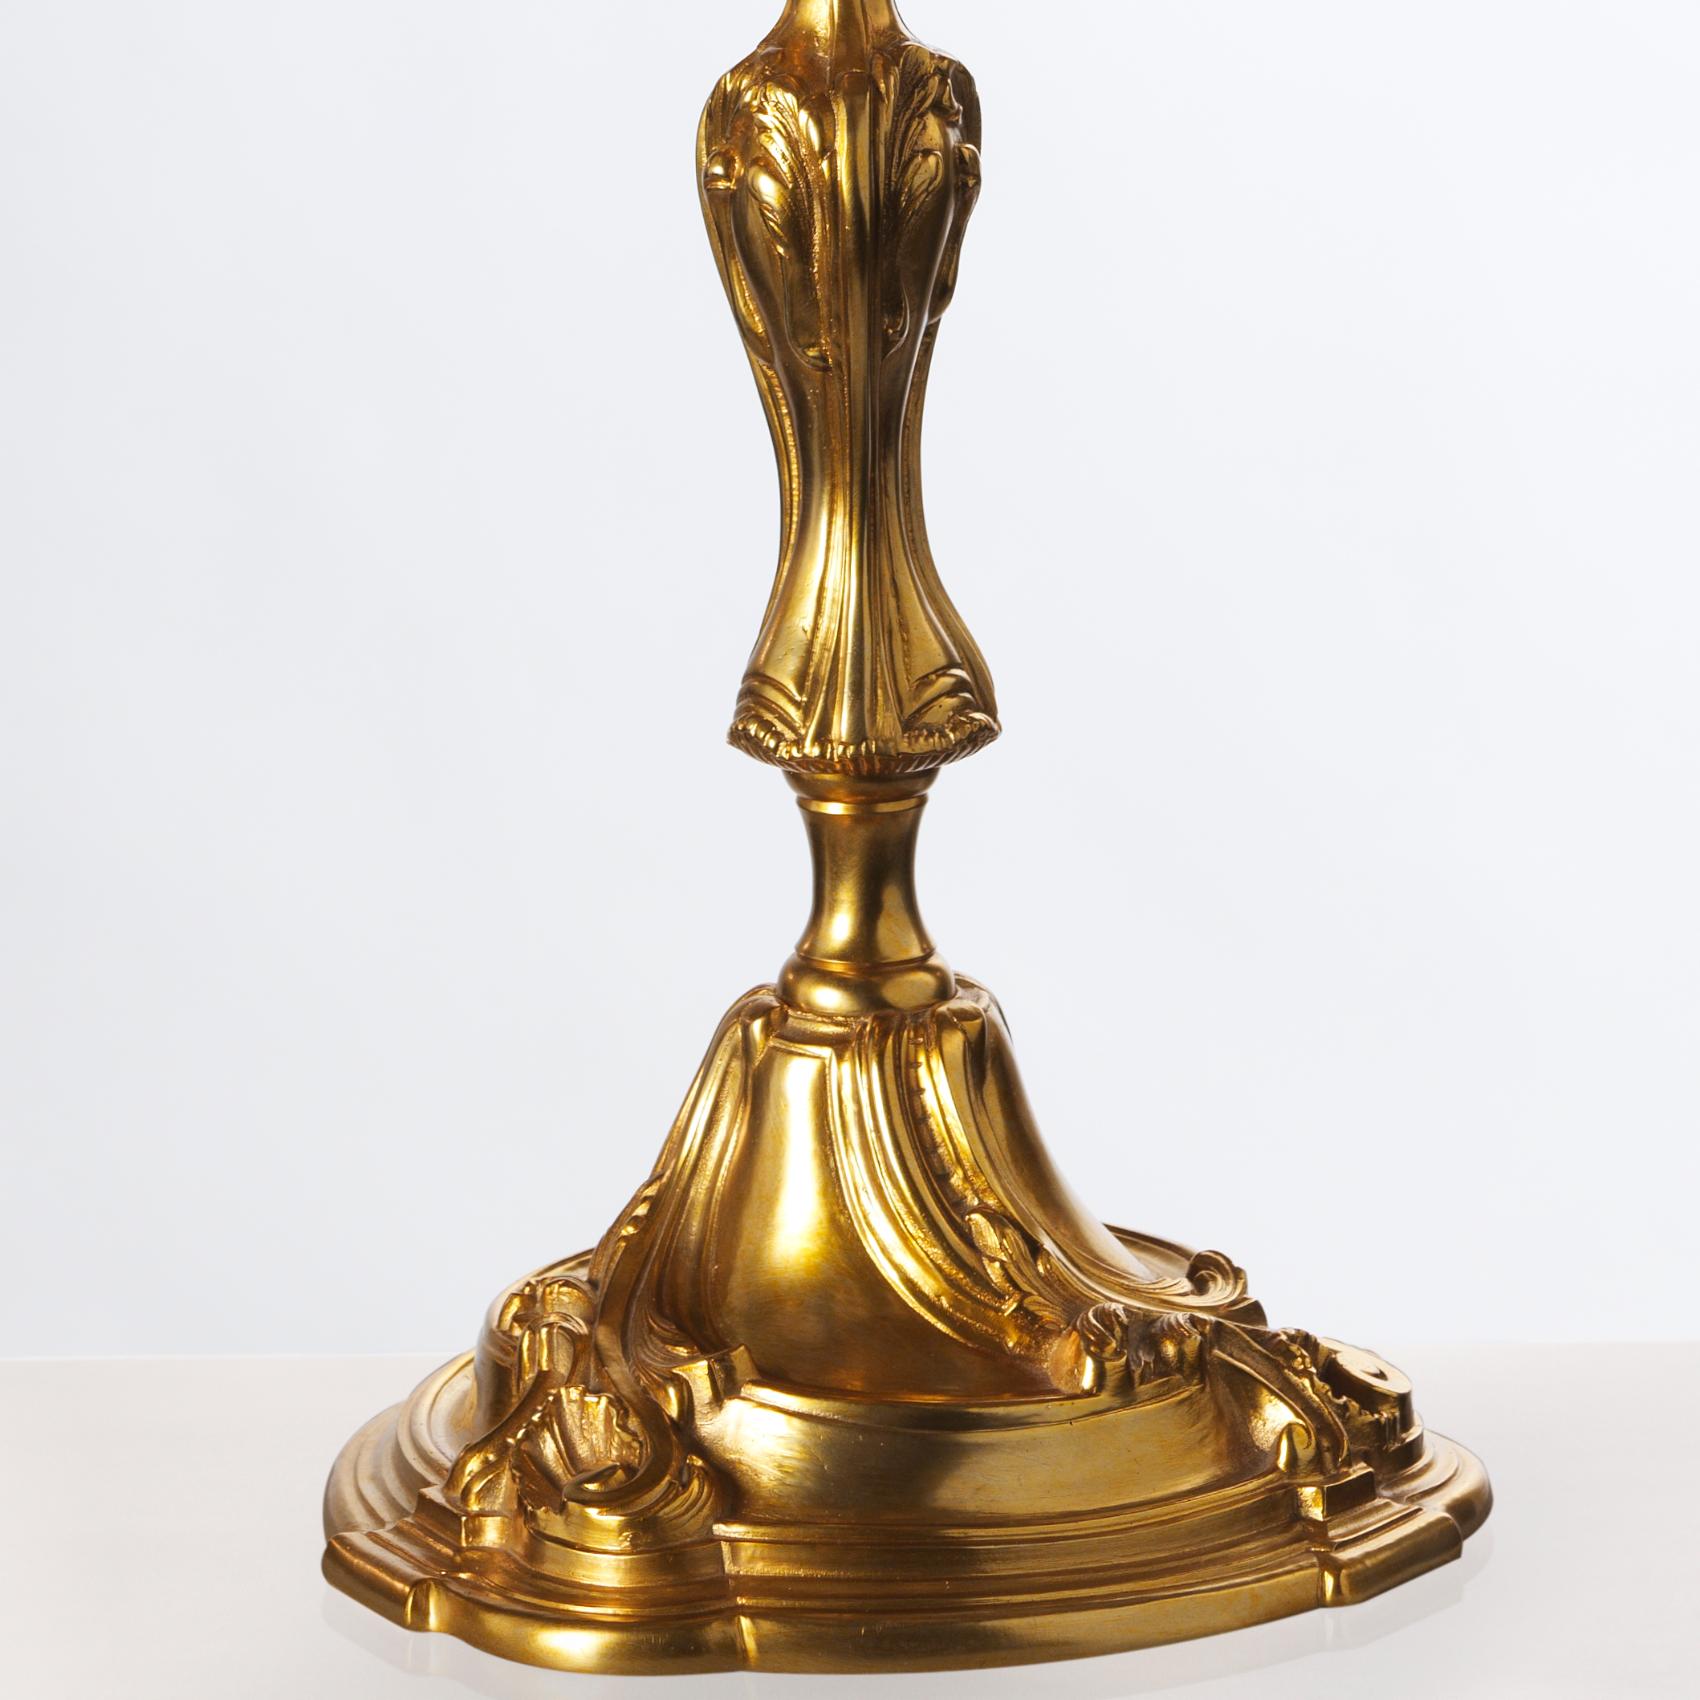 Cette lampe de style Louis XV en bronze doré de Gherardo Degli Albizzi reprend le grand goût de la décoration de la période Rococò. Ainsi, les motifs végétaux sont omniprésents dans cette pièce, dont les formes sont d'une grande élégance et